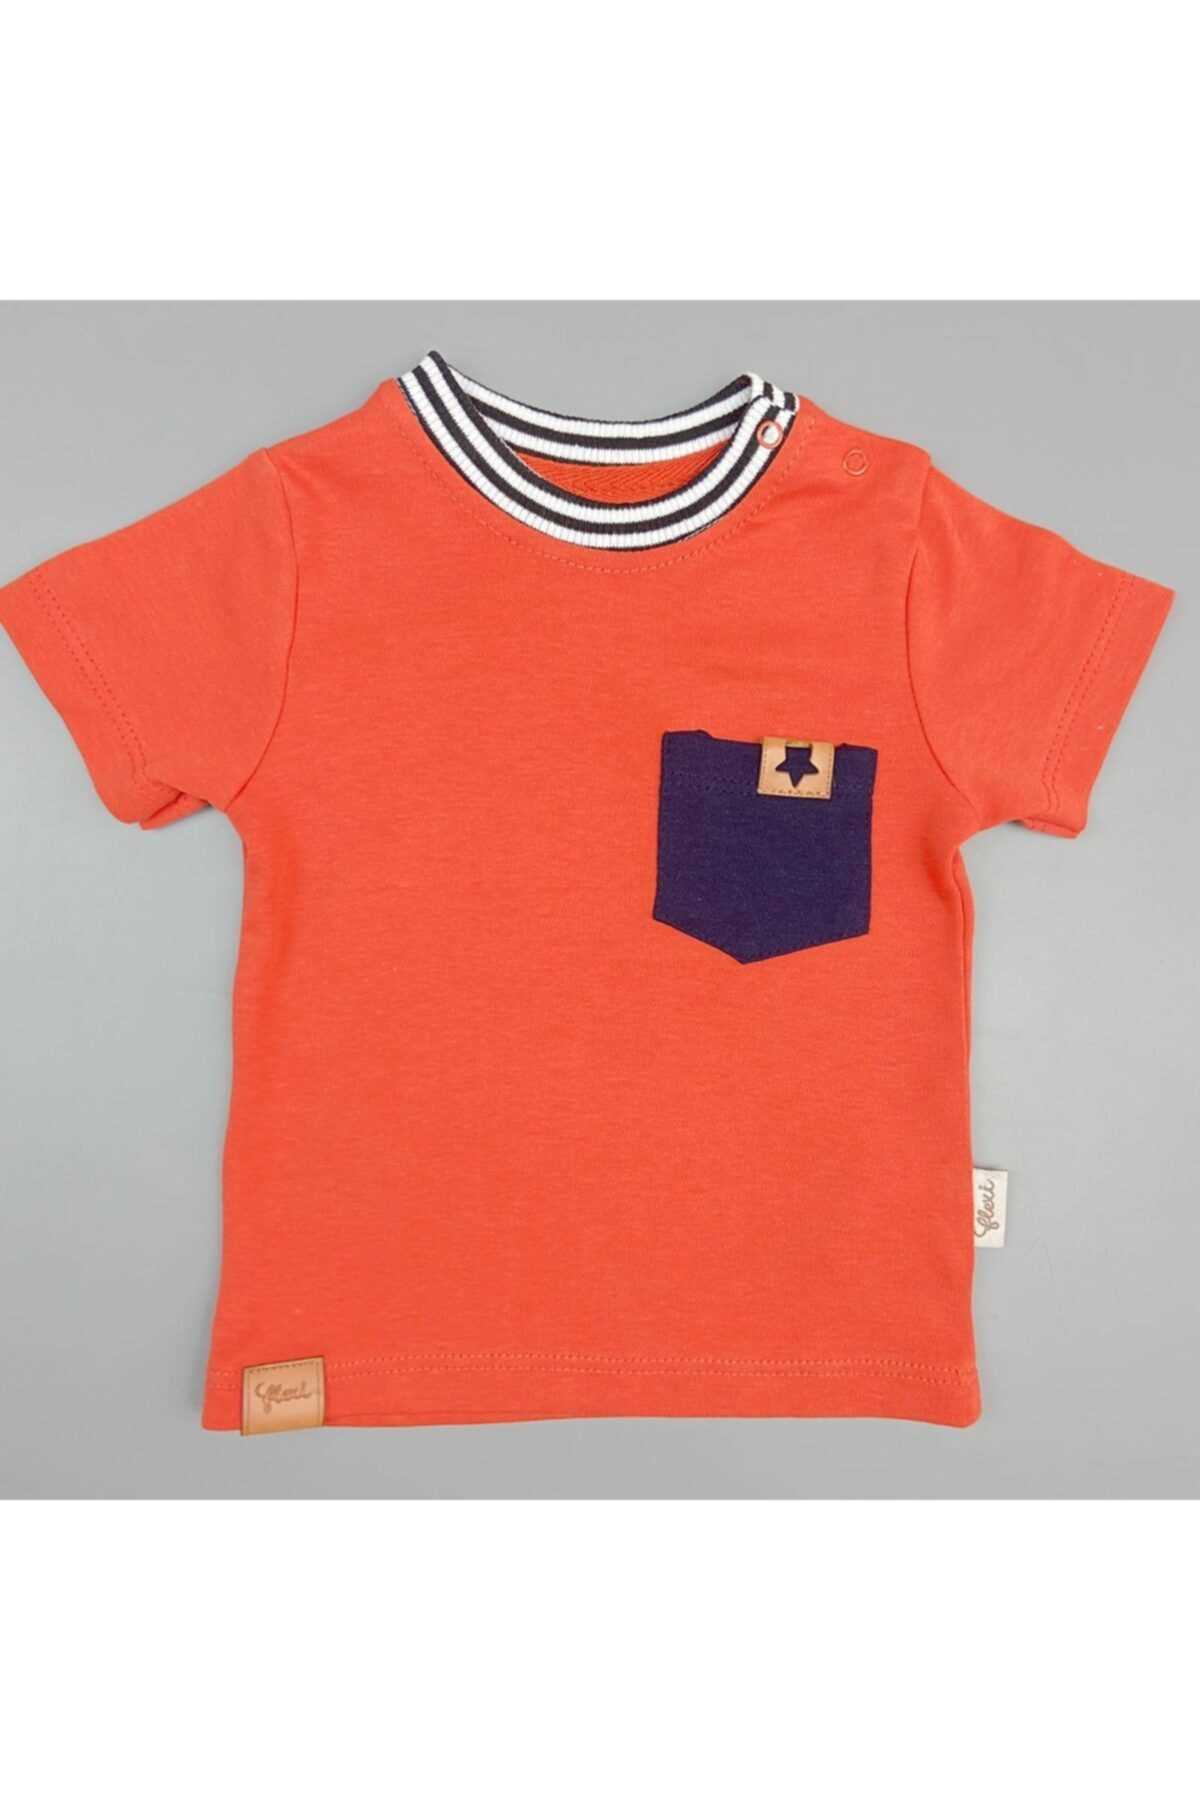 خرید اینترنتی ست لباس ست لباس نوزاد پسرانه برند Flexibaby رنگ نارنجی کد ty85585166